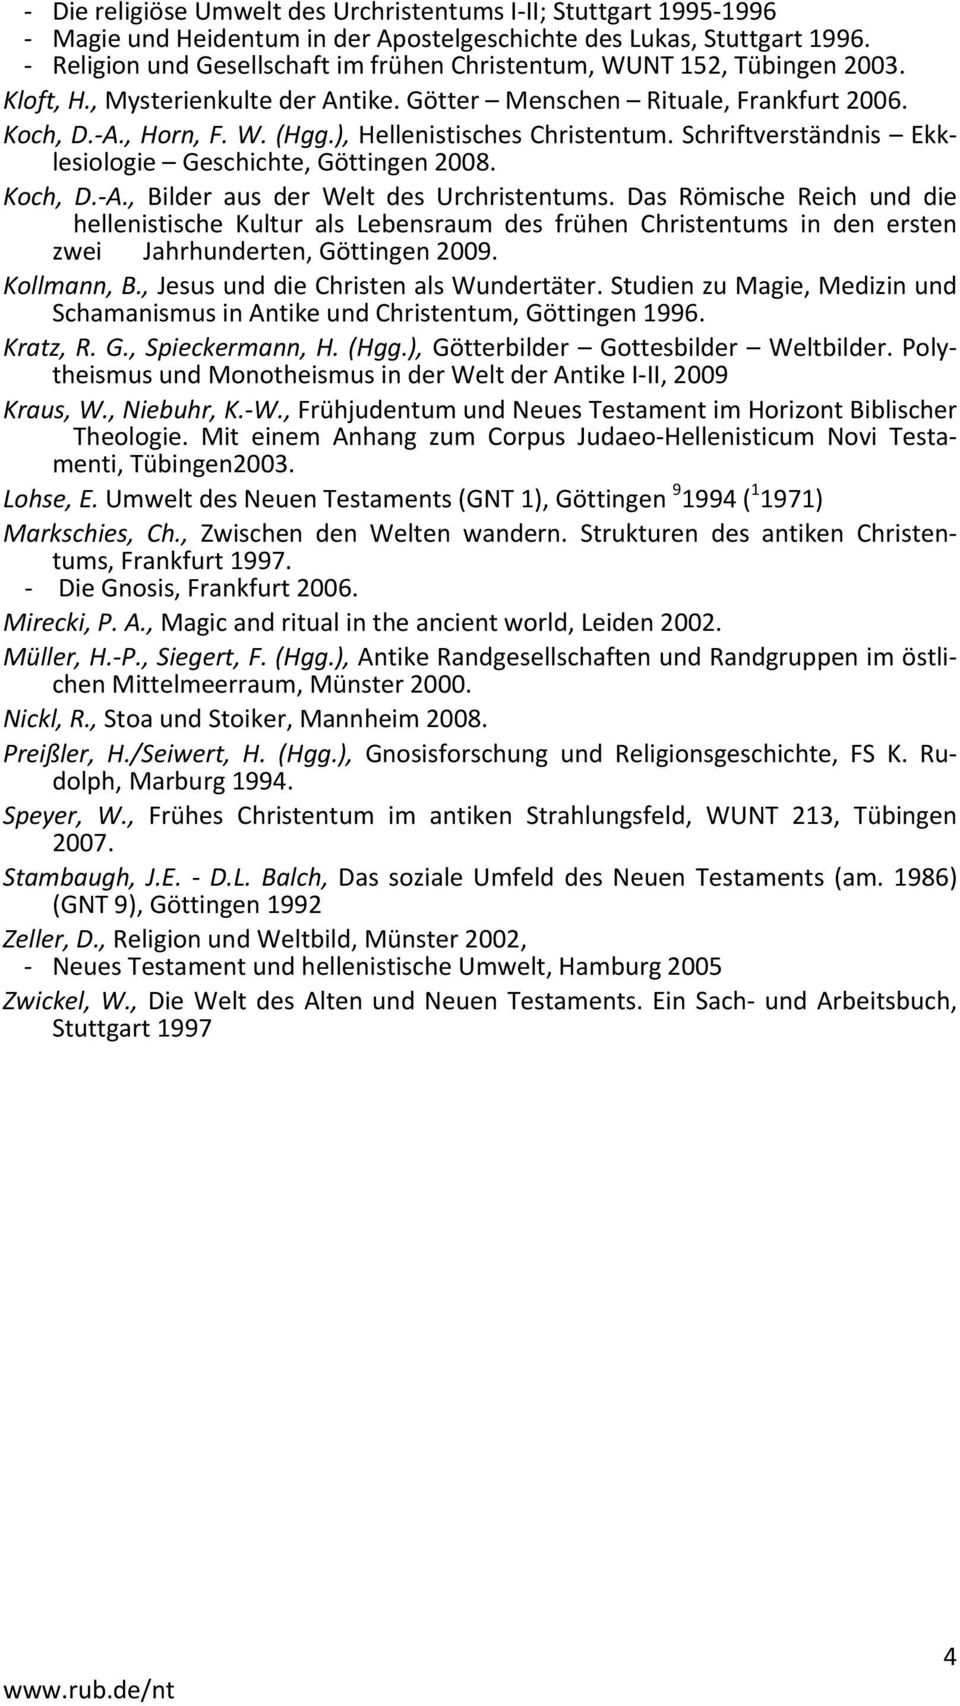 ), Hellenistisches Christentum. Schriftverständnis Ekklesiologie Geschichte, Göttingen 2008. Koch, D. A., Bilder aus der Welt des Urchristentums.